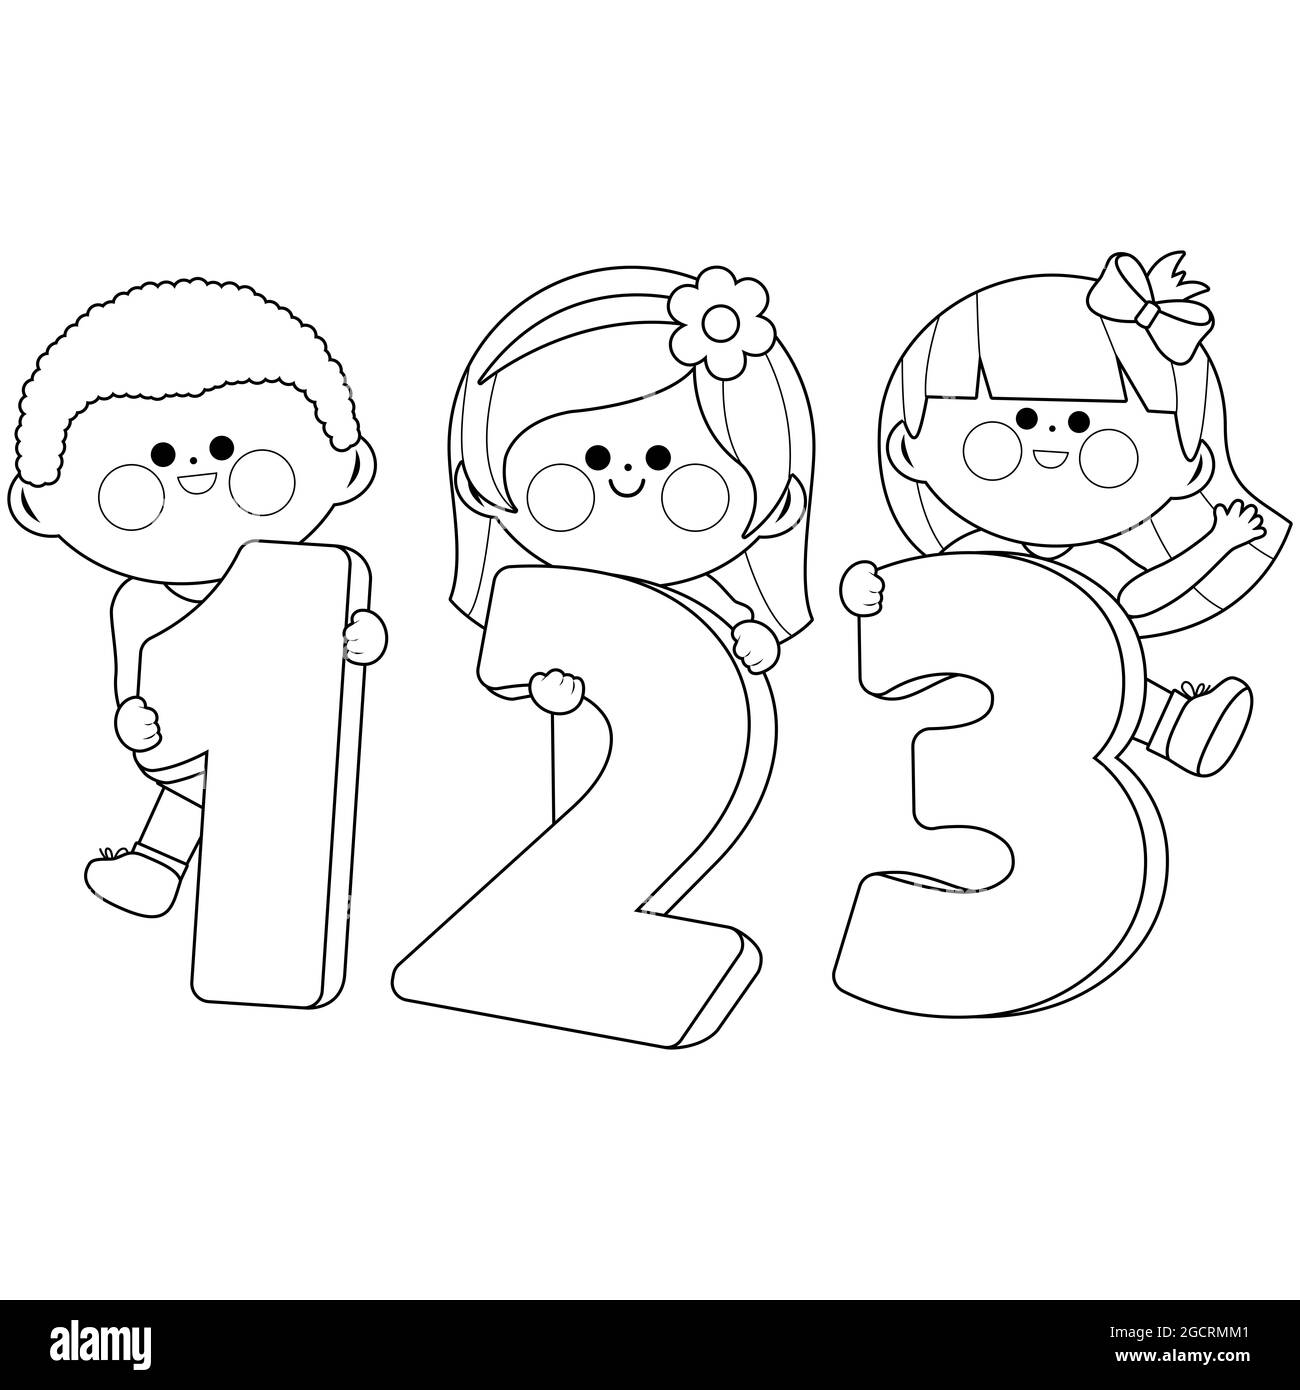 Niños y niñas que tienen números 123. Página para colorear en blanco y negro. Foto de stock